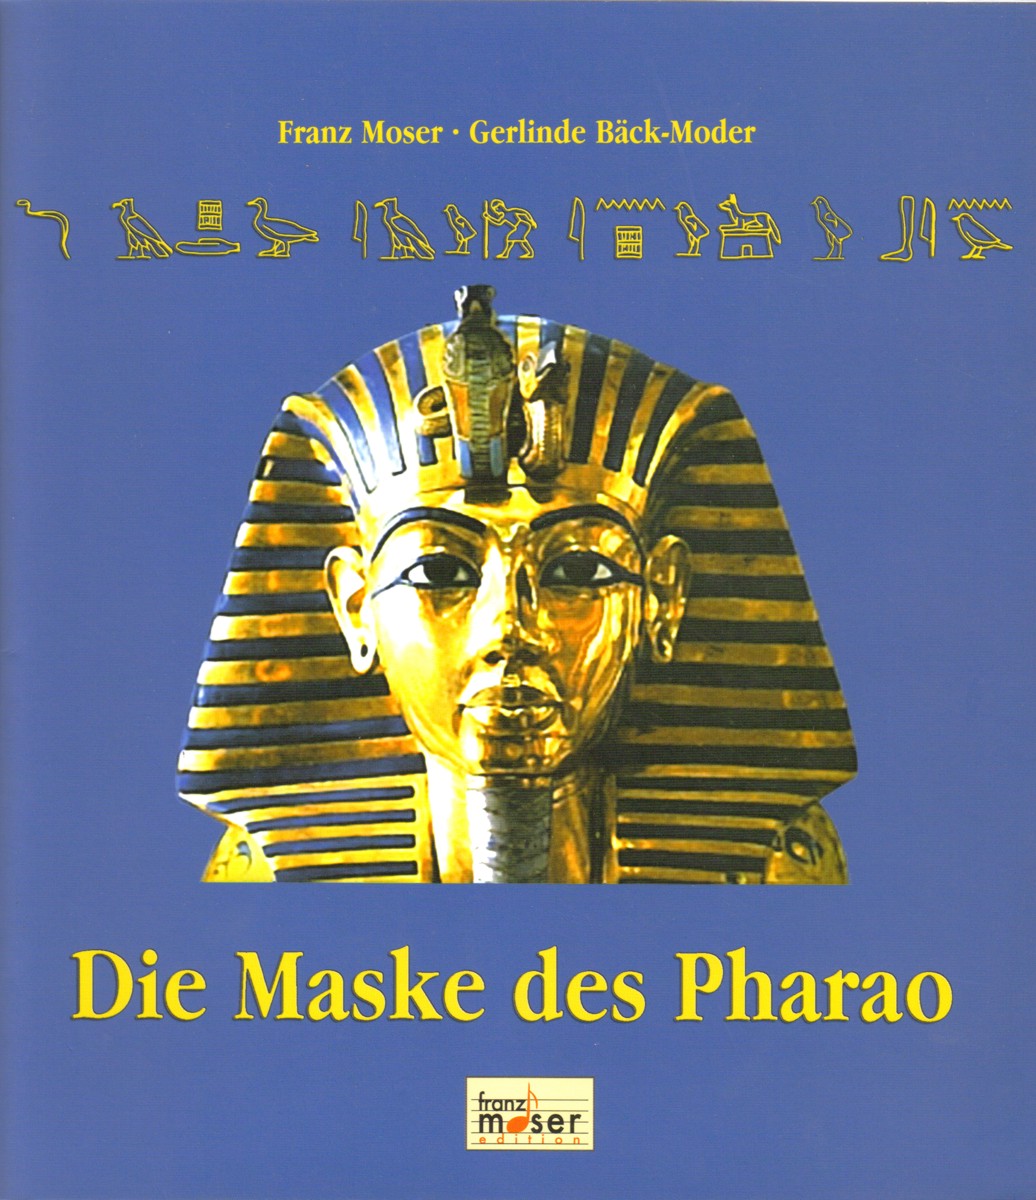 Maske des Pharao, Die - klicken für größeres Bild